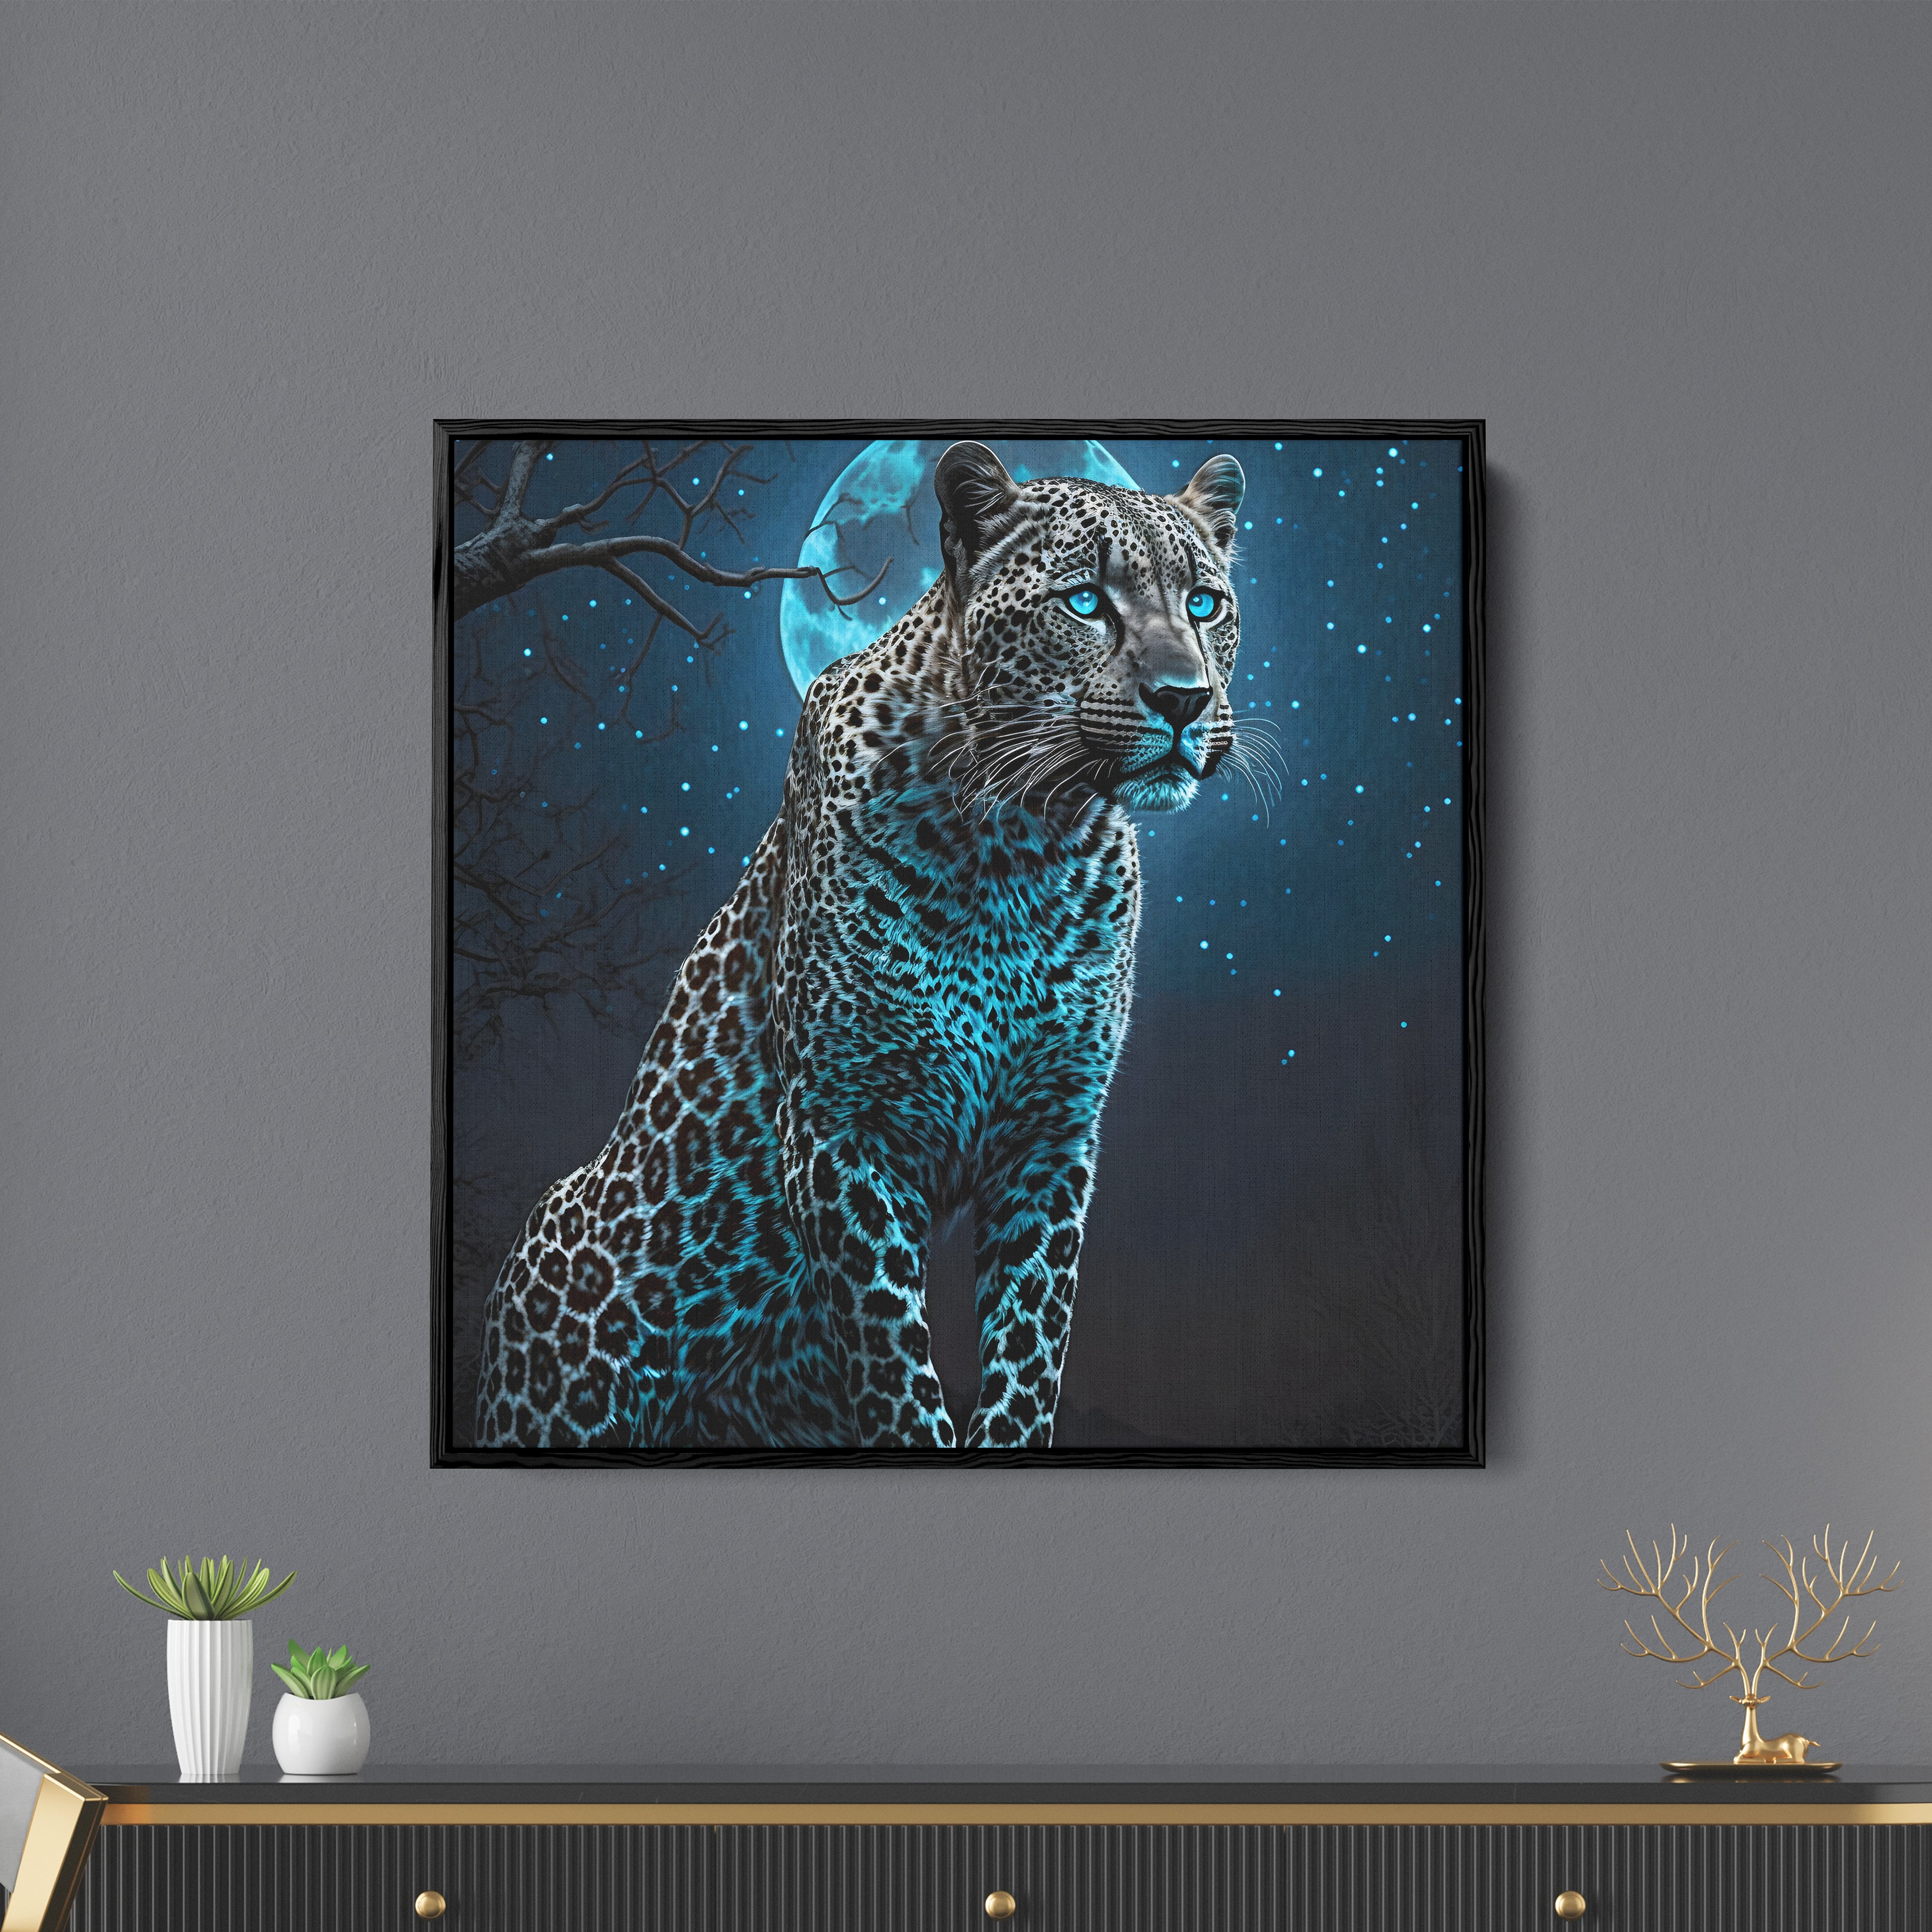 Hunting Cheetah Canvas Wall Painting